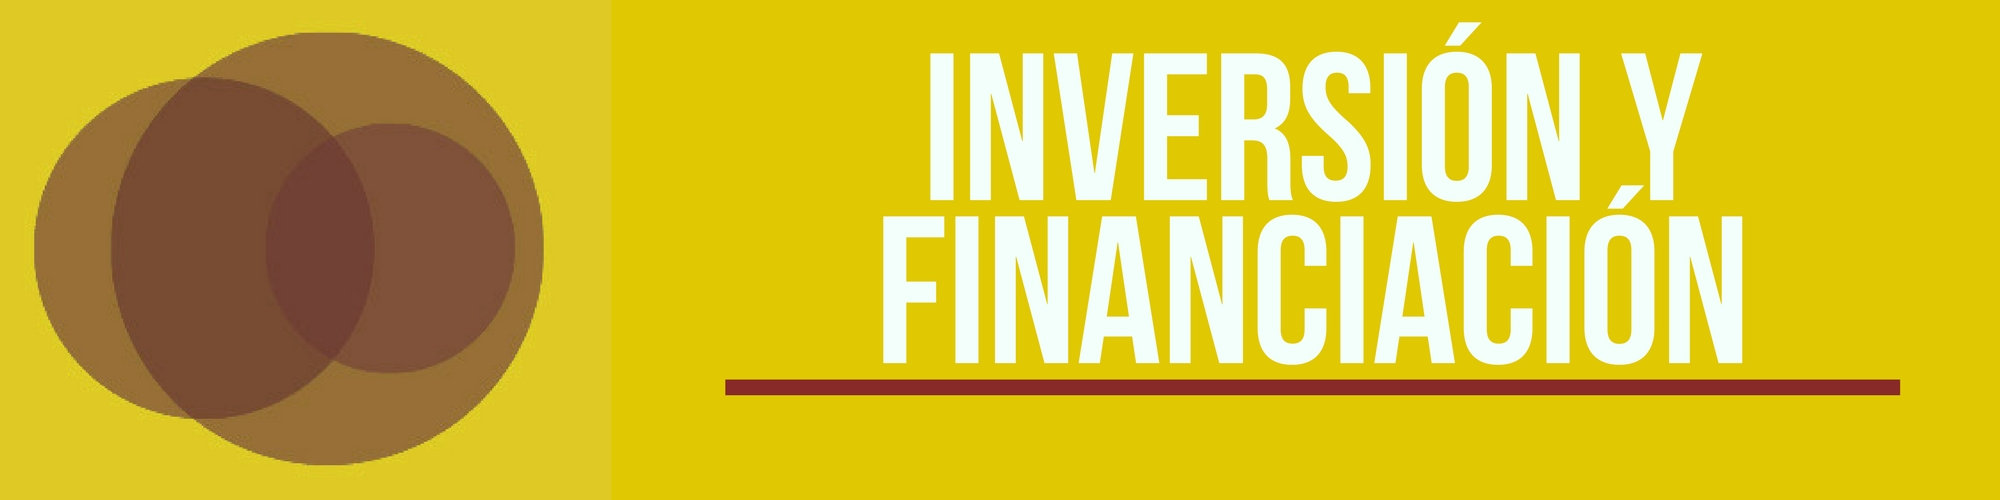 Inversin y financiacin Focus CV 2017[;;;][;;;]